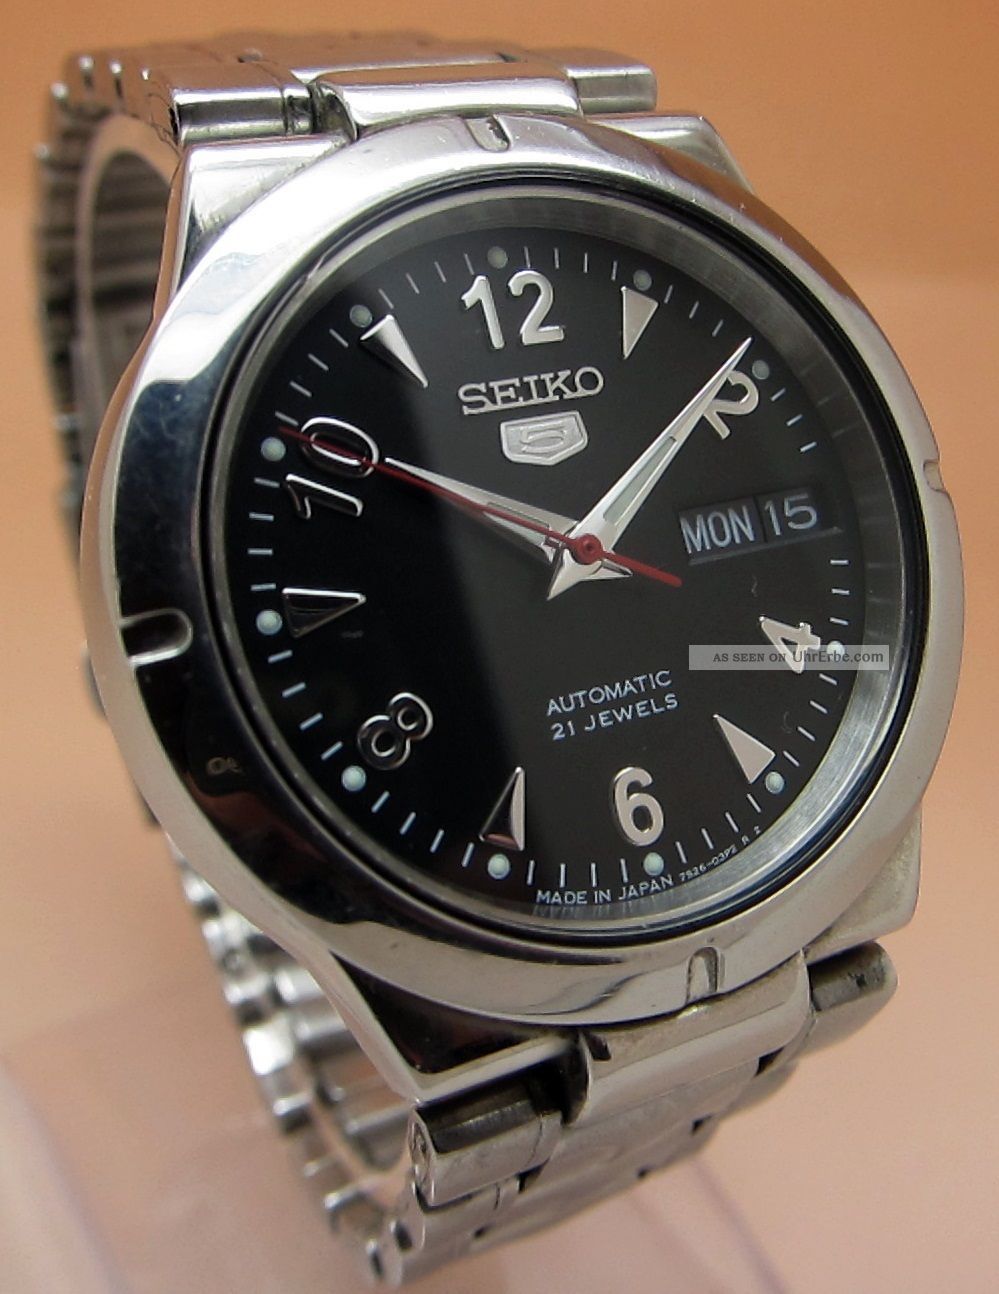 Seiko 5 Durchsichtig Automatik Uhr 7s26 - 01z0 21 Jewels Datum & Taganzeige Armbanduhren Bild